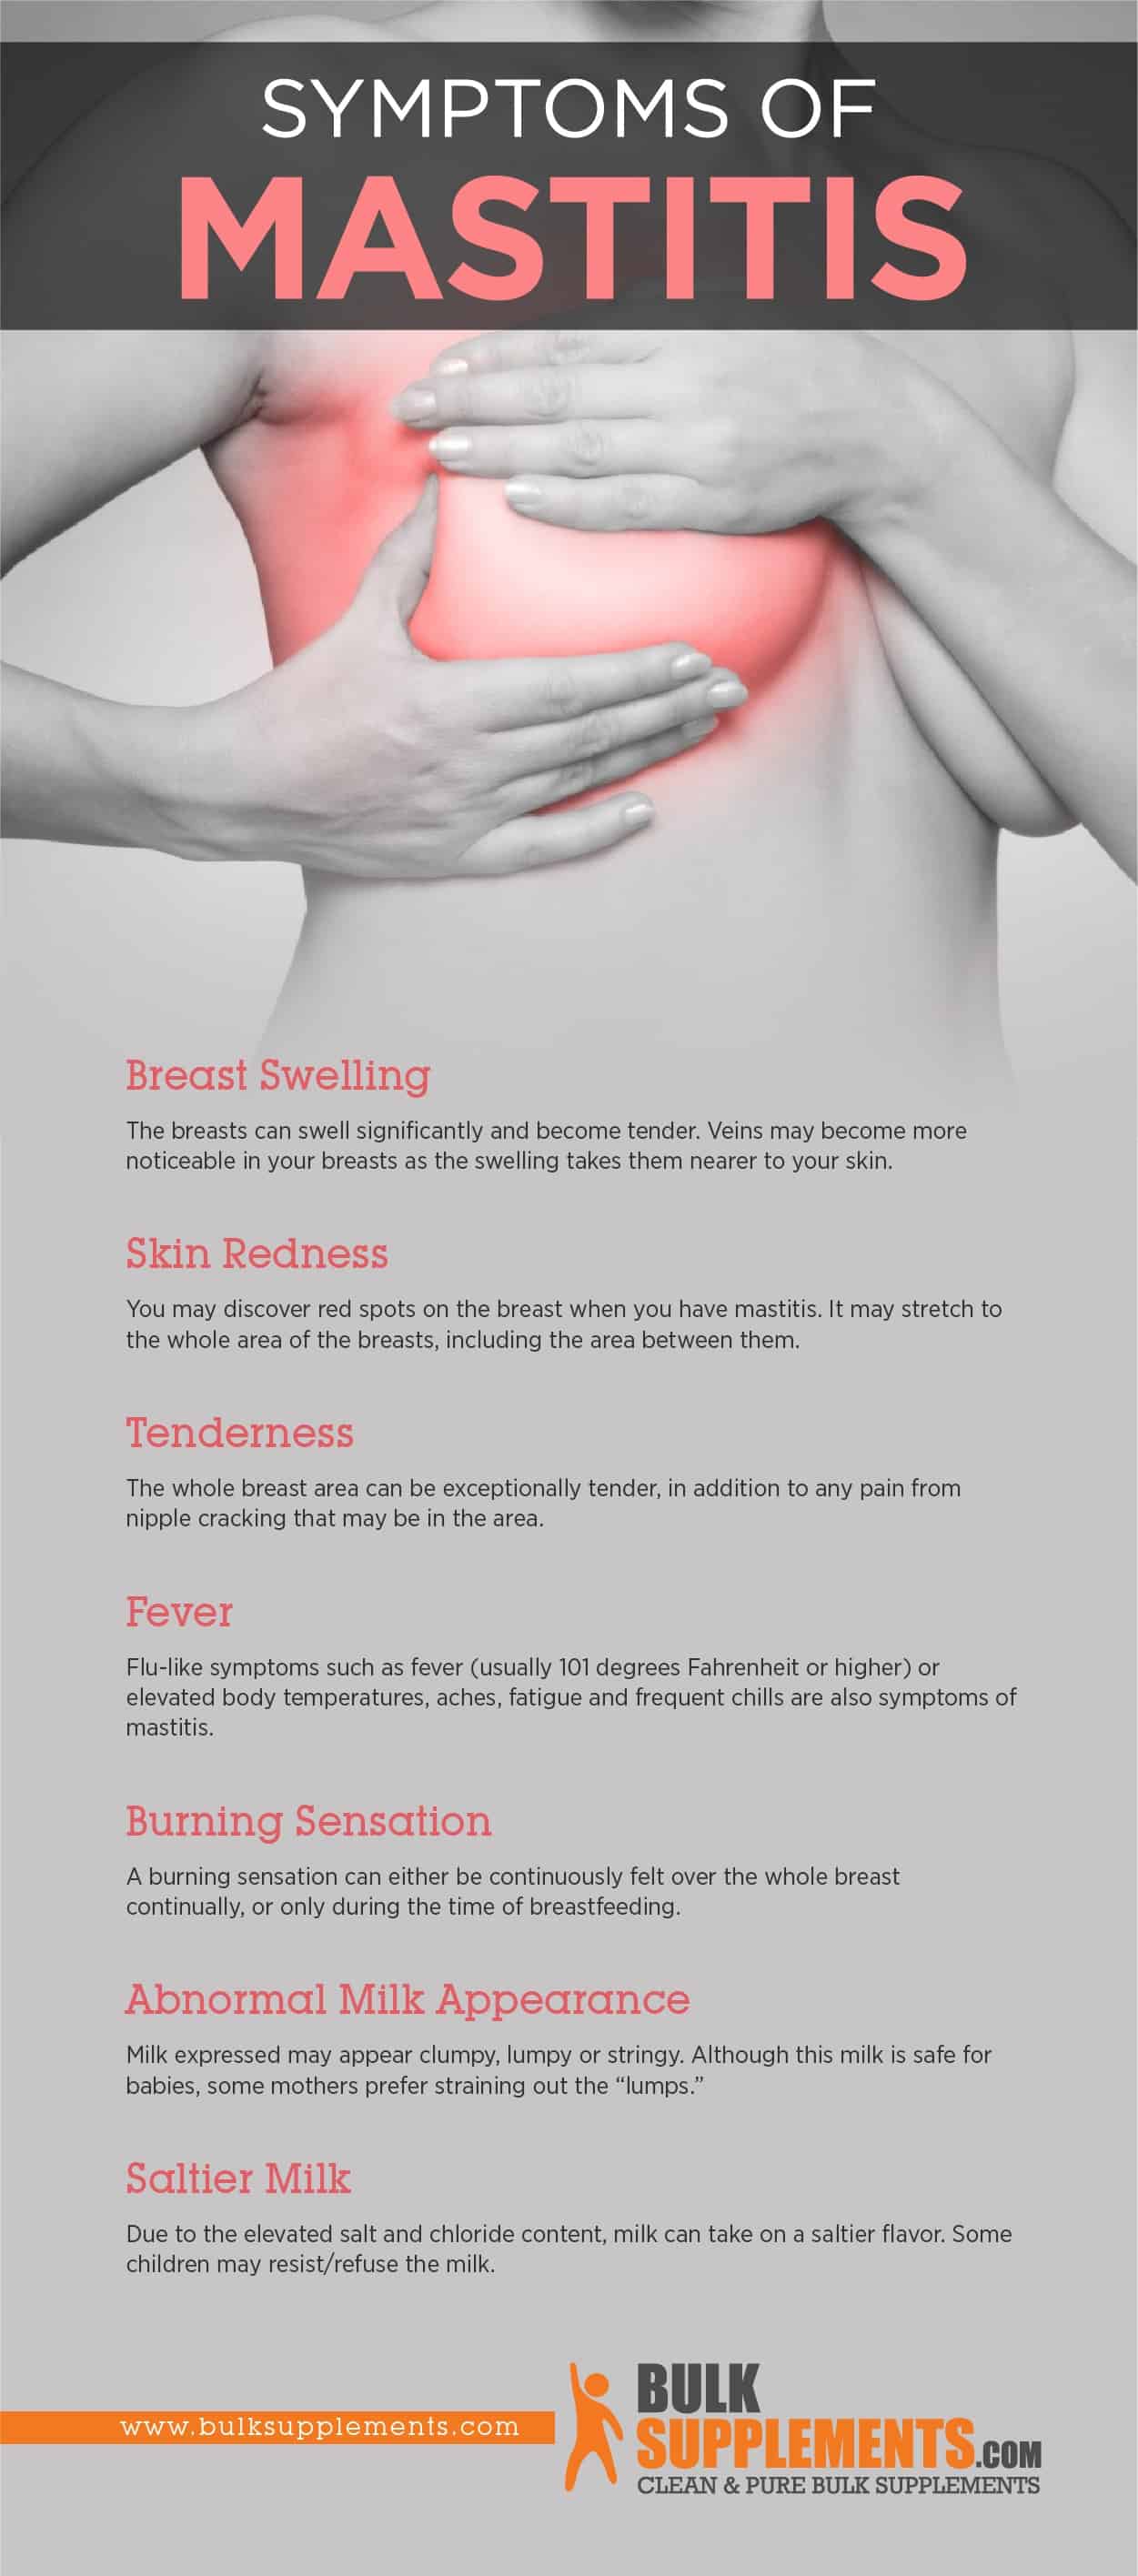 Symptoms of Mastitis